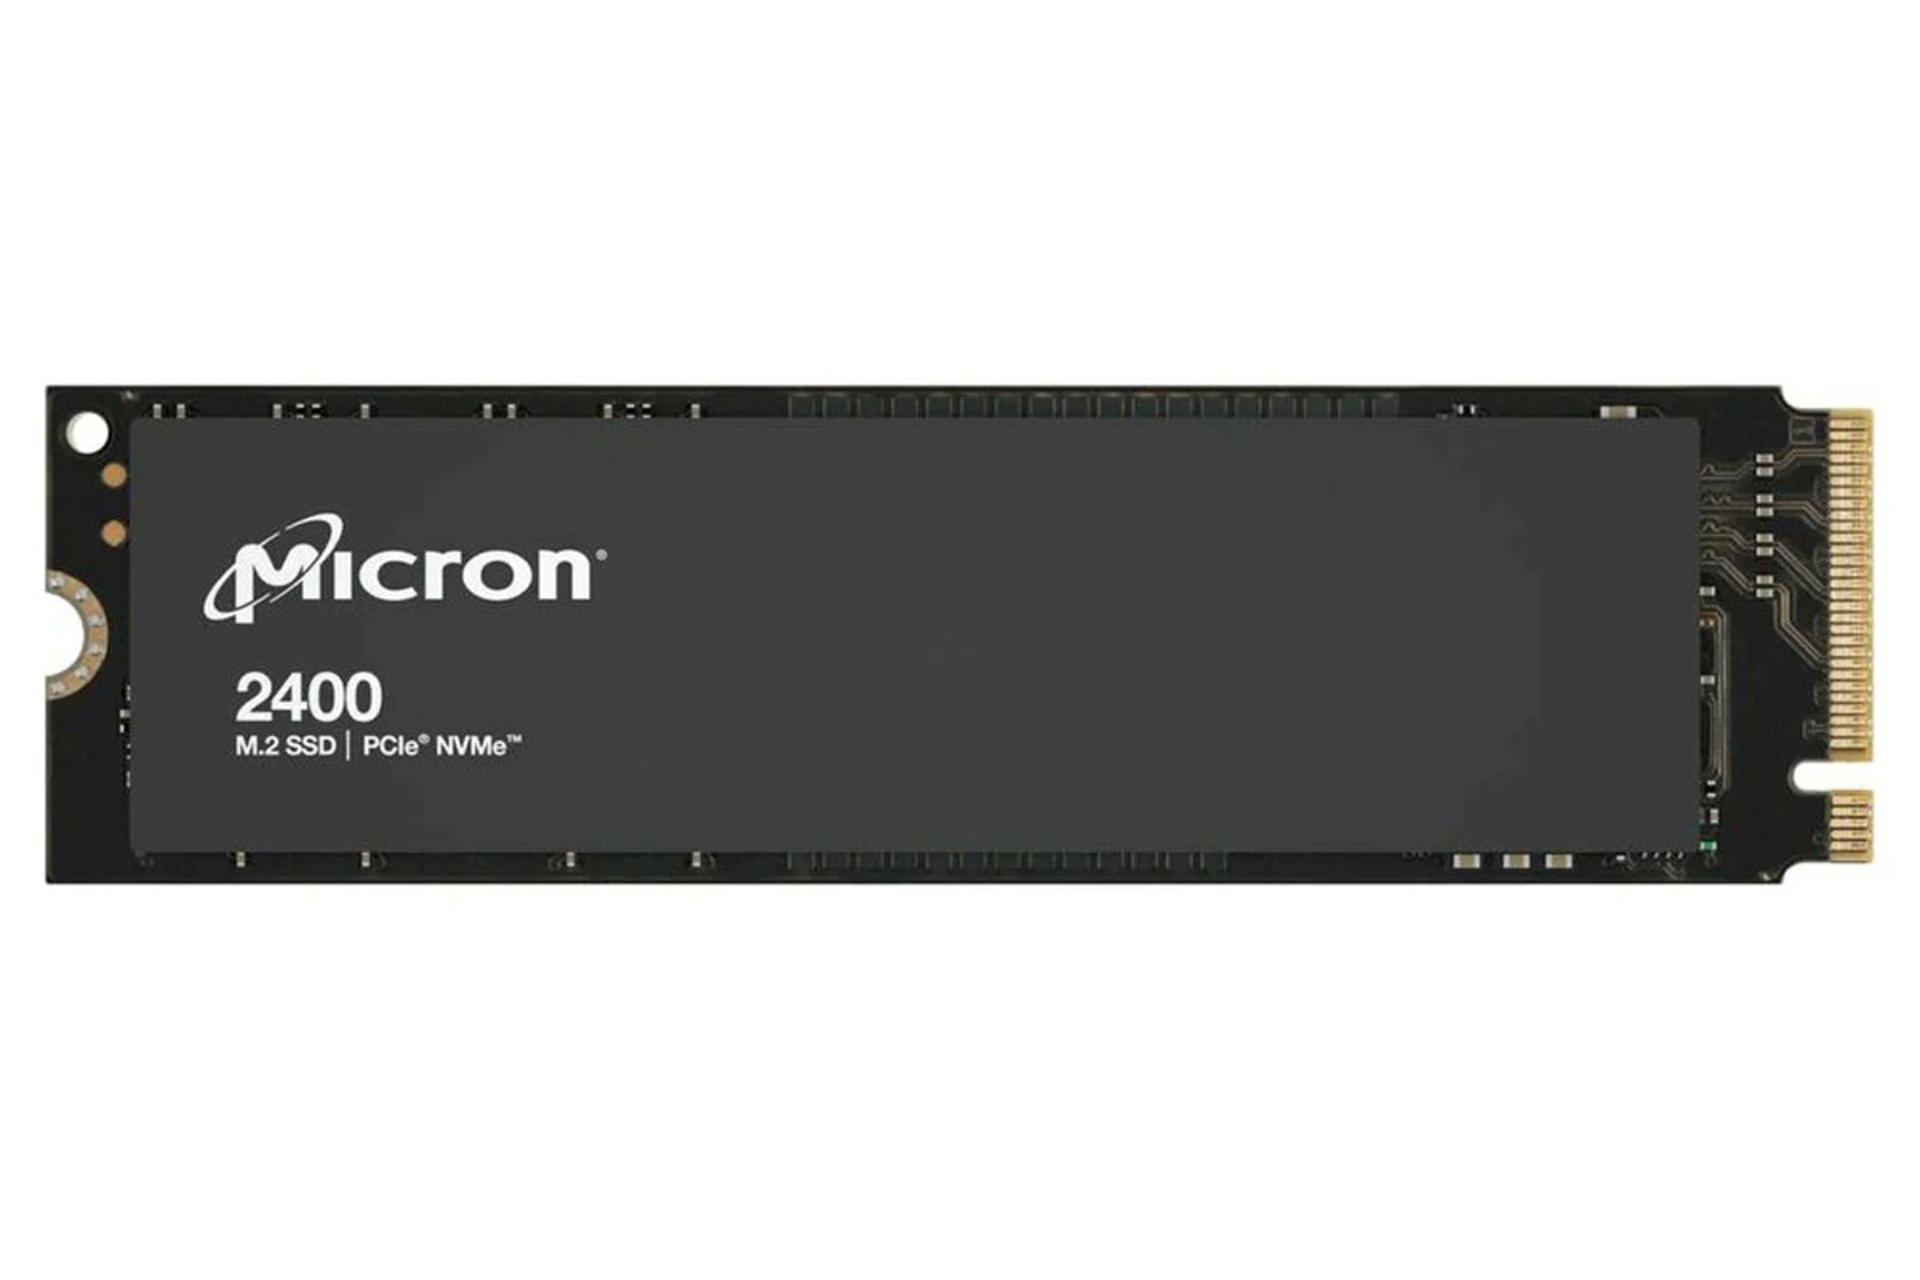 ابعاد و اندازه اس اس دی مایکرون 2400 NVMe M.2 ظرفیت 512 گیگابایت